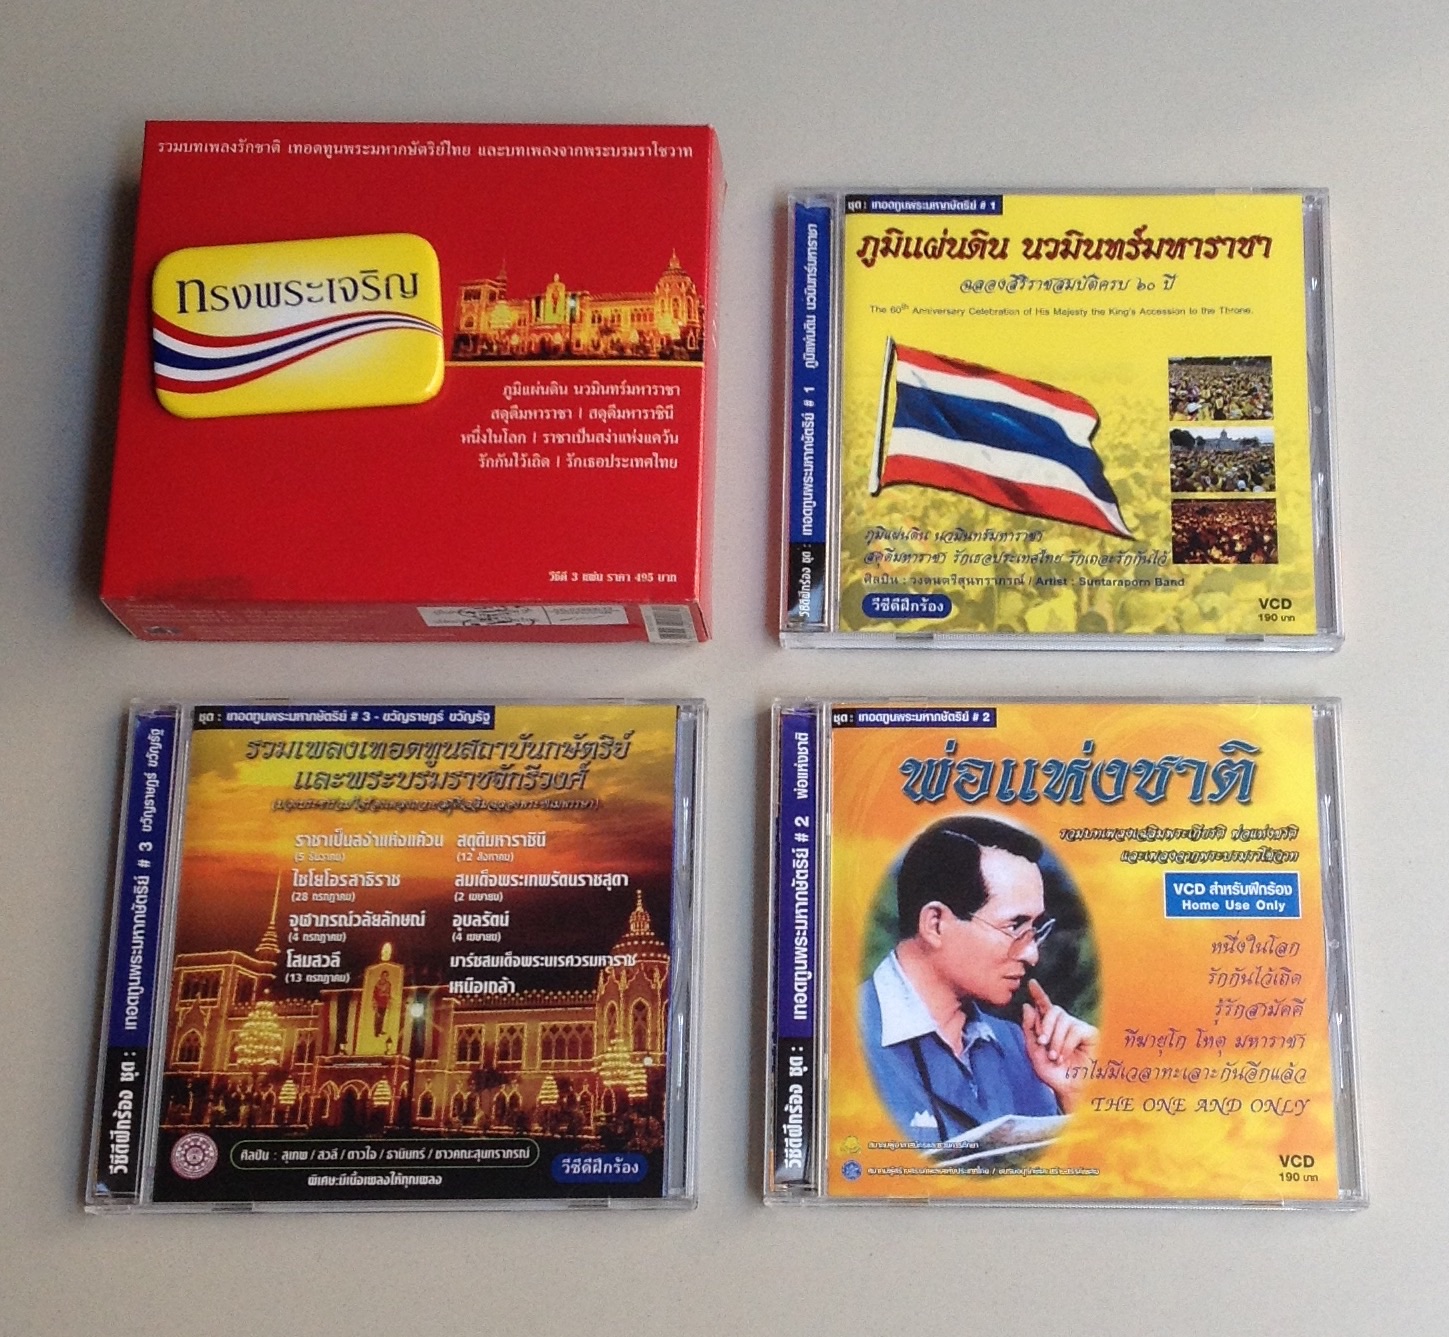 รวมบทเพลงรักชาติ เทอดทูนพระมหากษัตริย์ไทย และ บทเพลงจากพระบรมราโชวาท รูปที่ 1